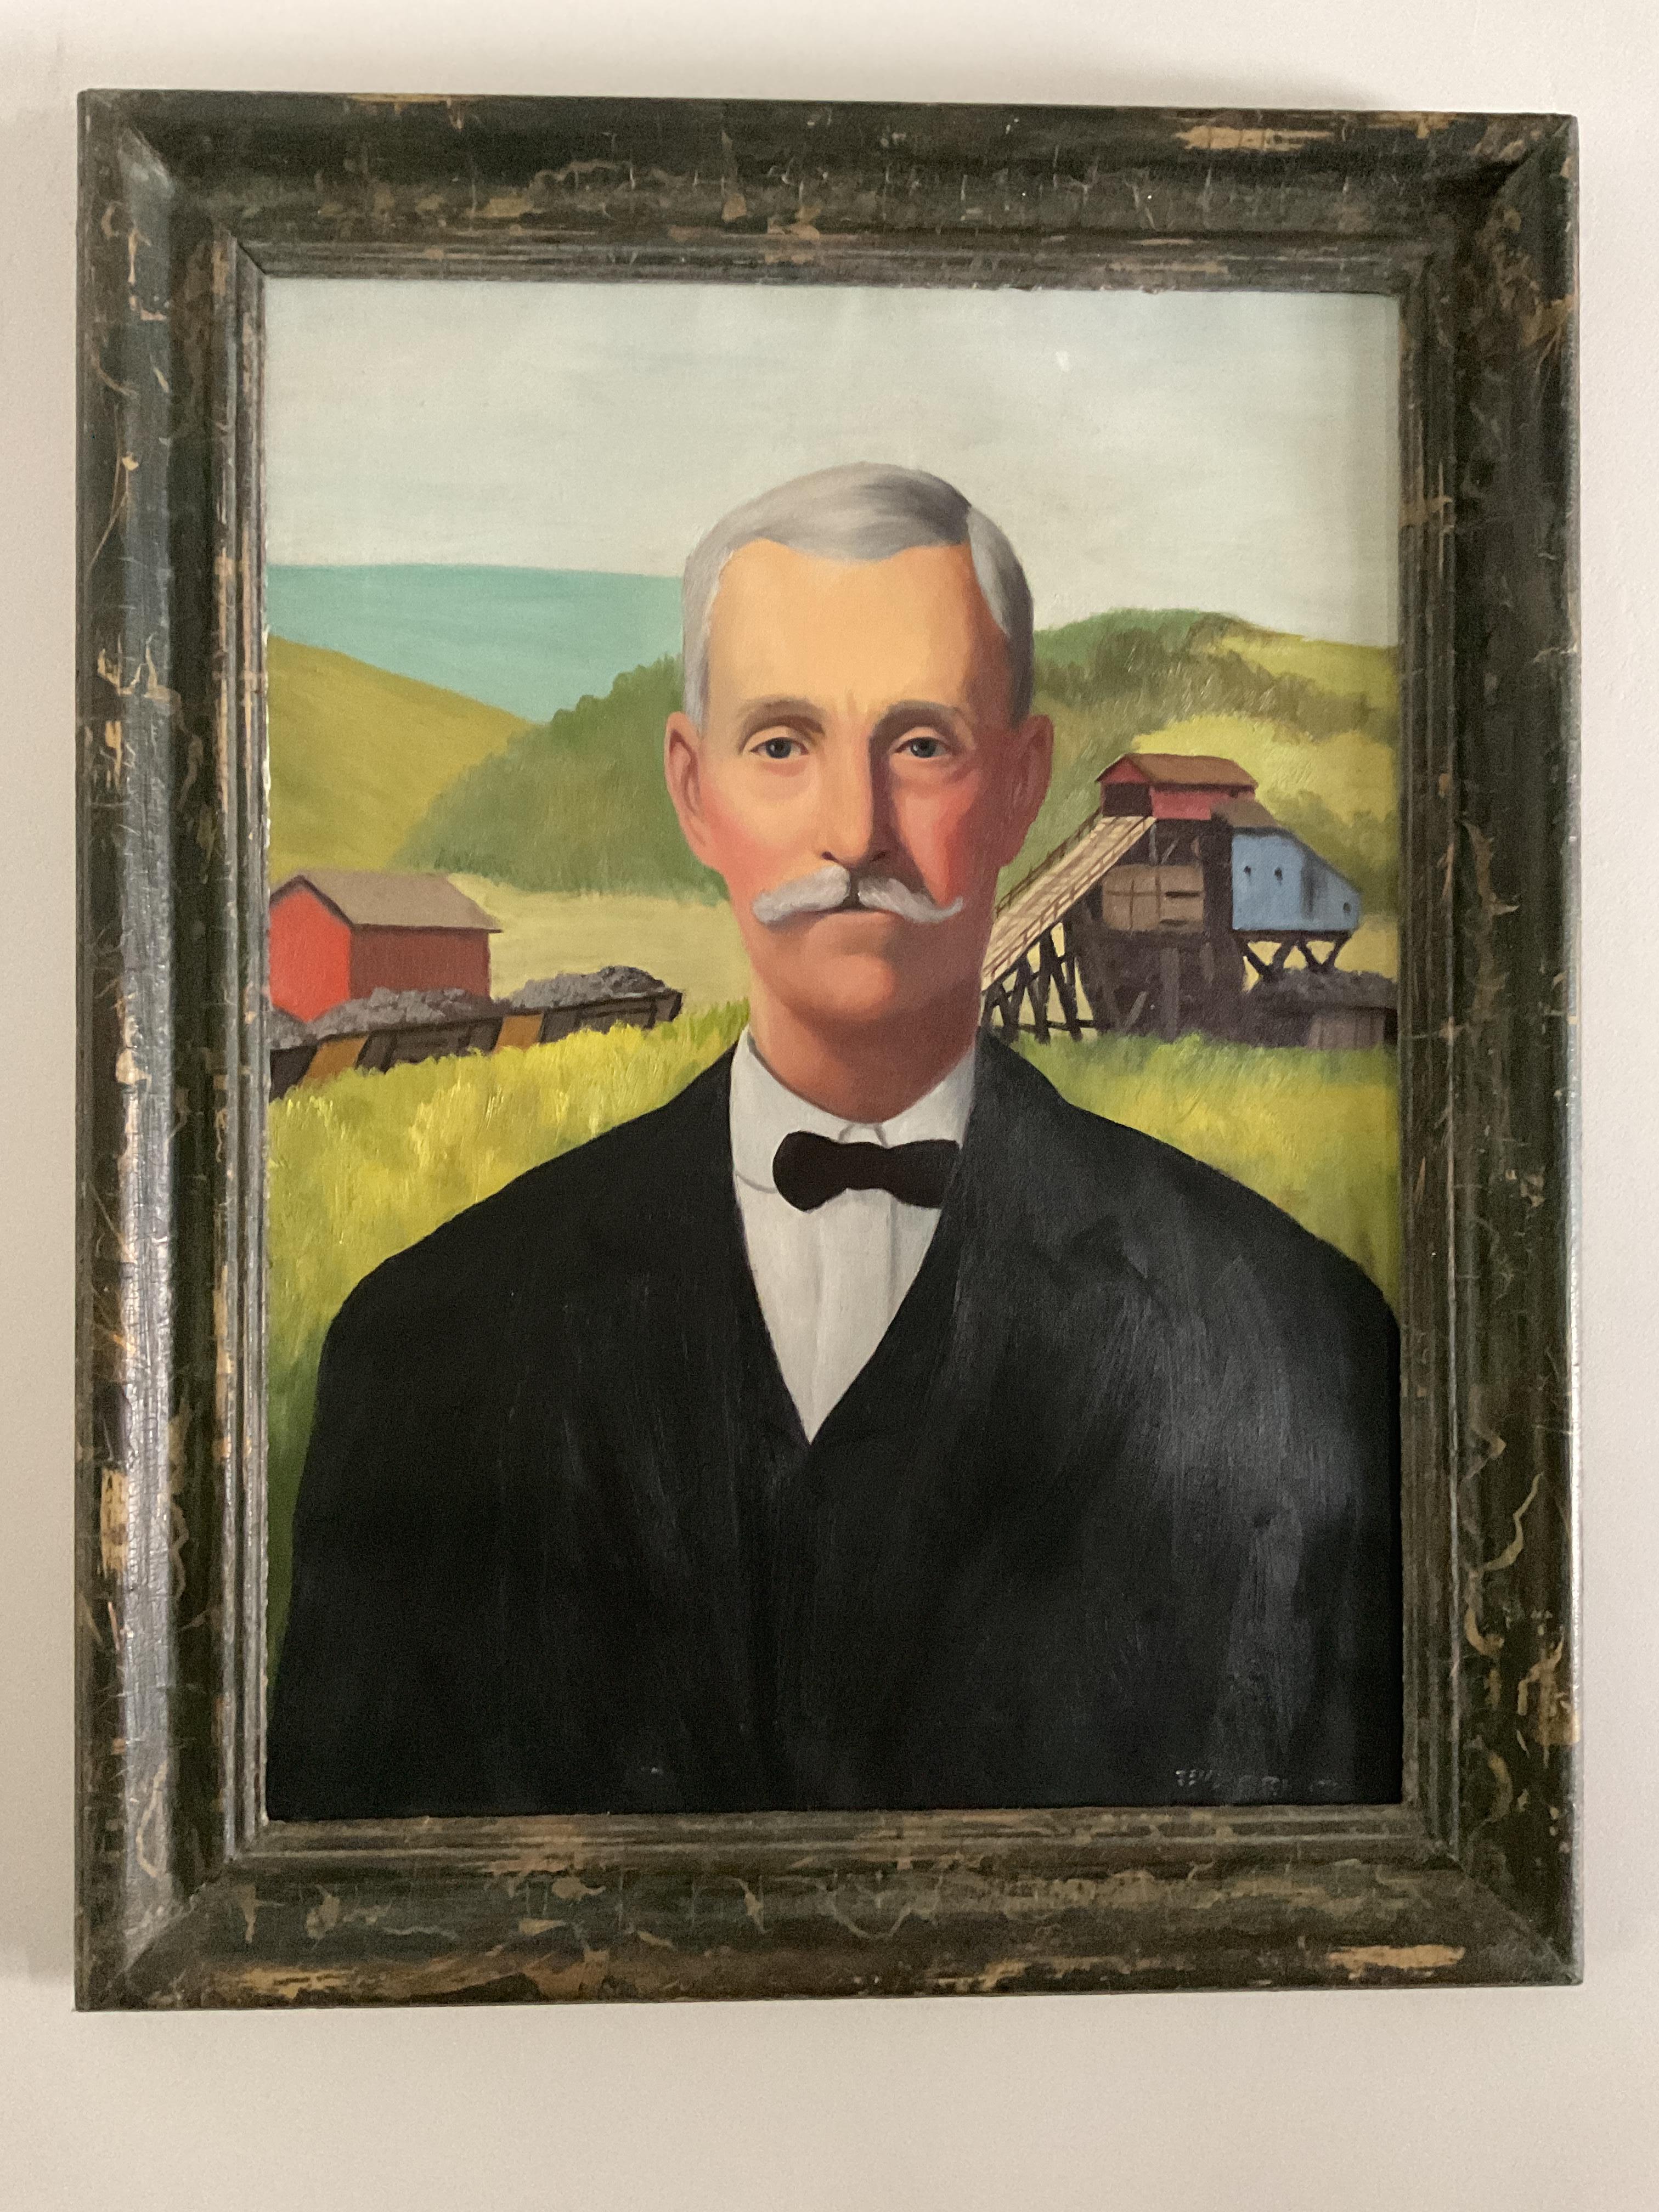 Ce portrait très stylisé représente un homme bien habillé devant une propriété minière, probablement en Virginie occidentale.  Elle s'inscrit dans la lignée d'artistes américains plus anciens tels que Grant Wood ou Norman Rockwell. Comme il est bien